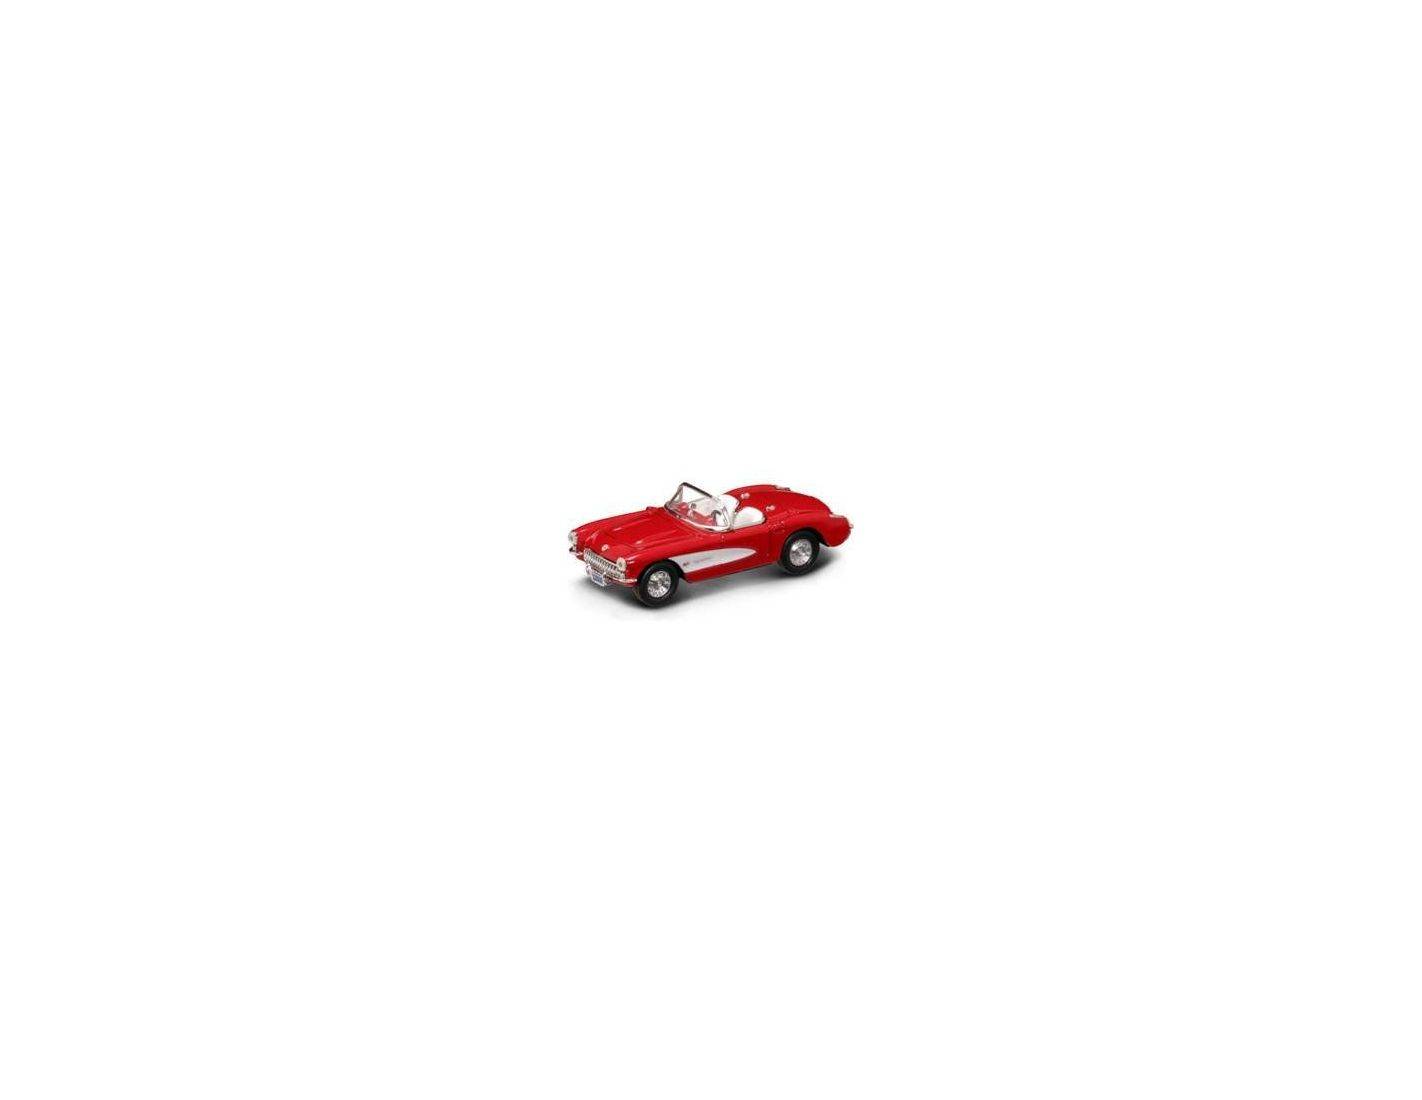 Lucky Die Cast LDC94209R Chevrolet Corvette 1957 Red 1:43 MODELLINO Die Cast Compatibile con